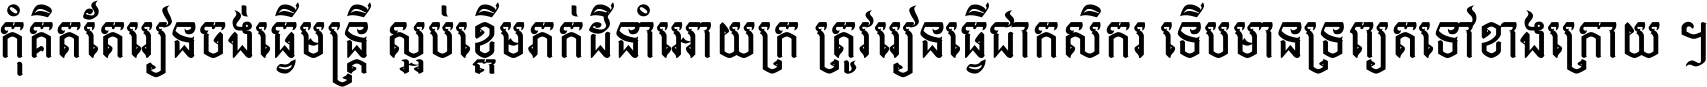 Kh Ang Bokor New